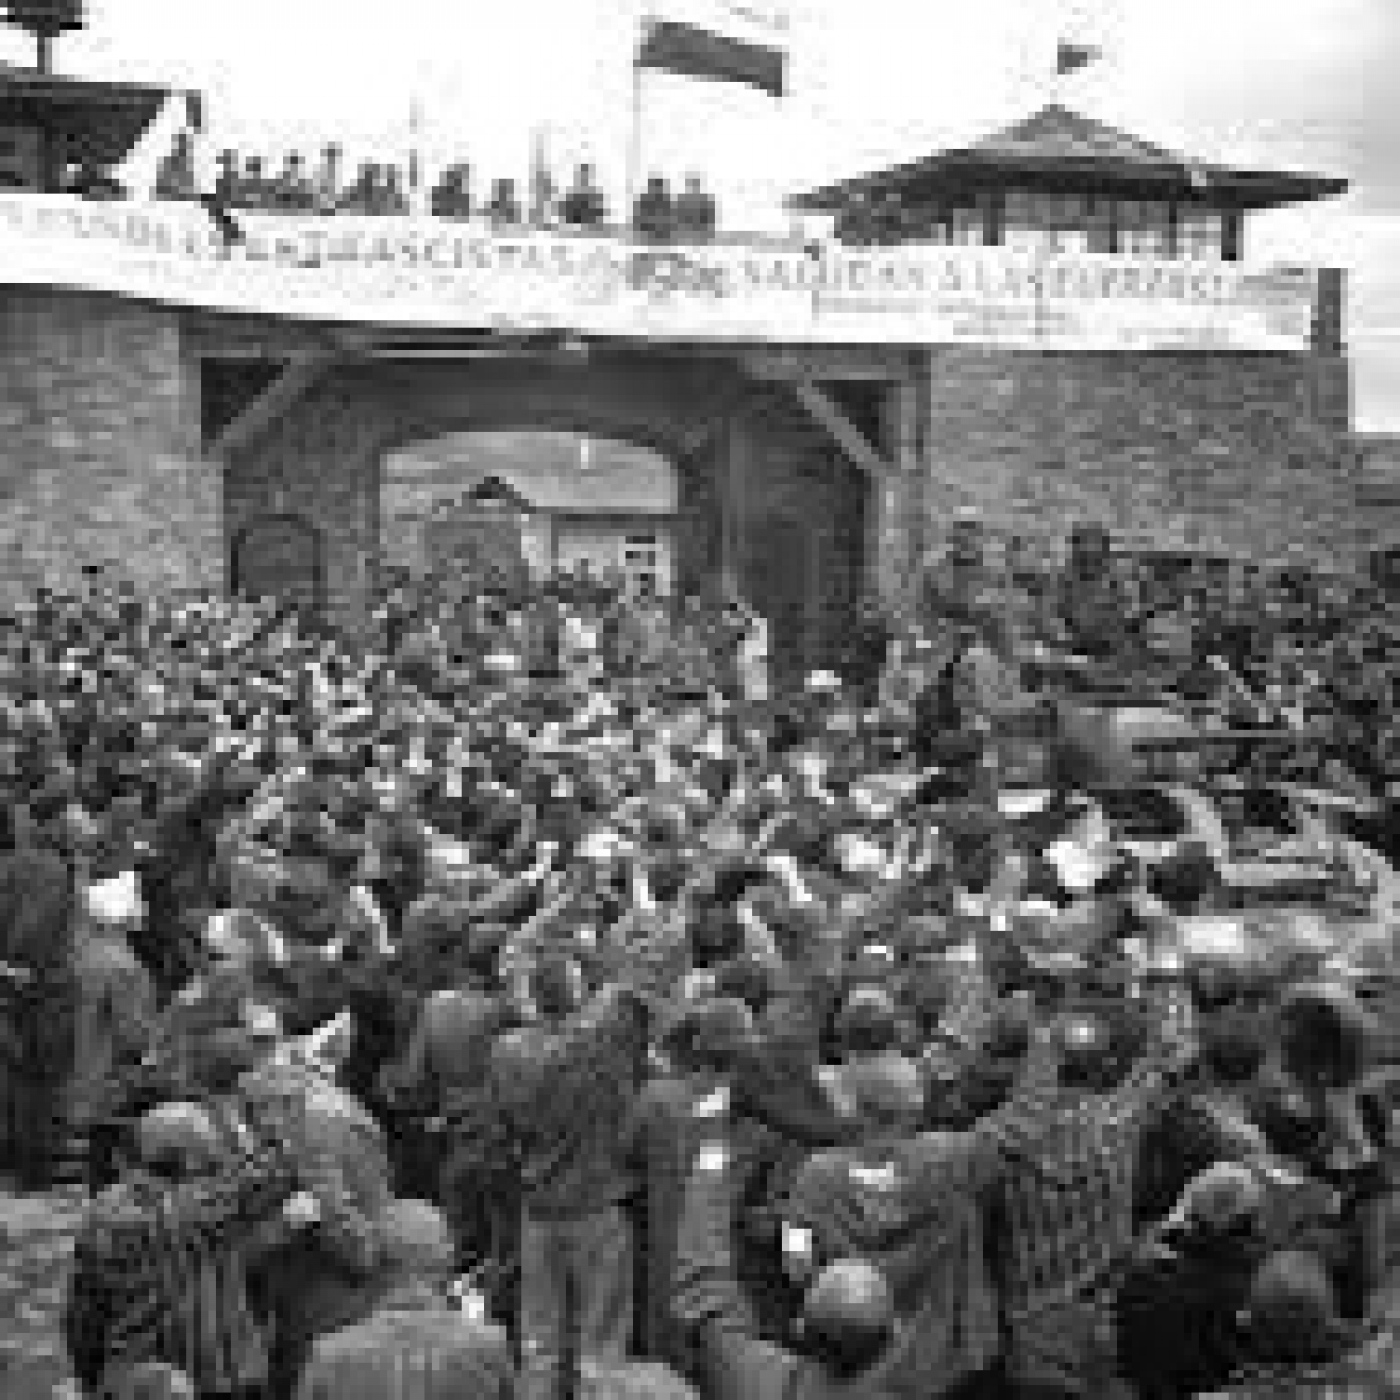 El Convoy de los 927 de Mauthausen